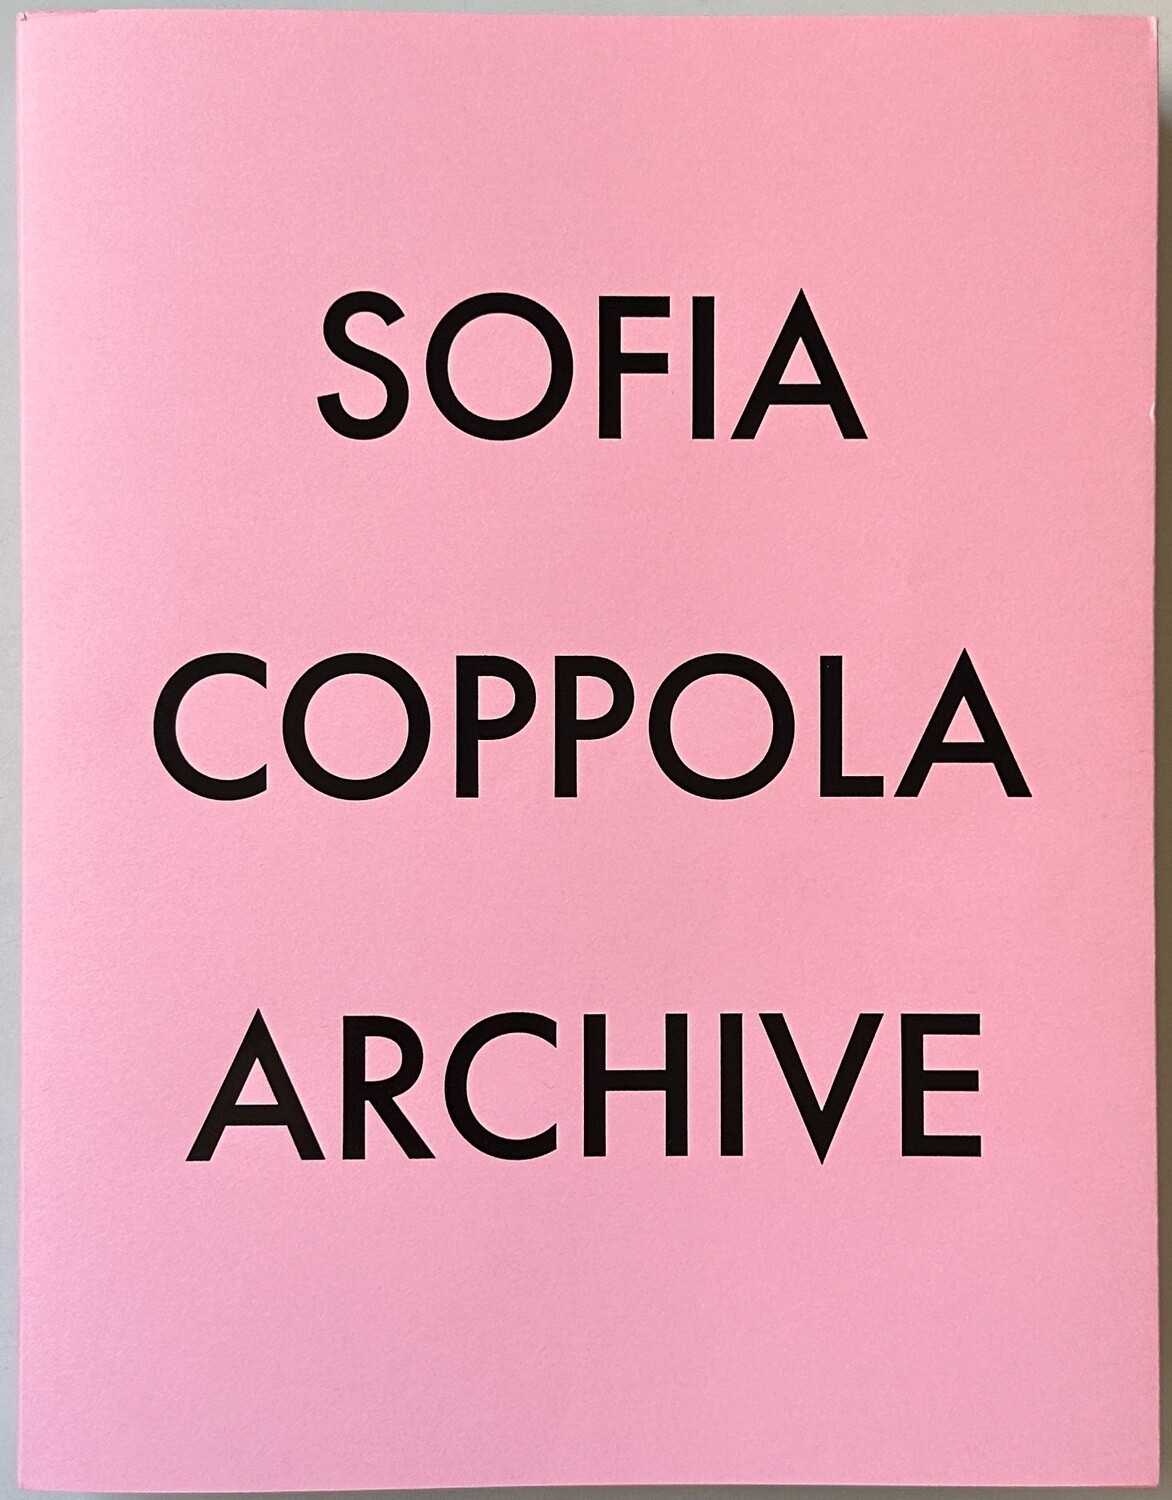 The Sofia Coppola Look Book  Sofia coppola style, Sofia coppola, Fashion